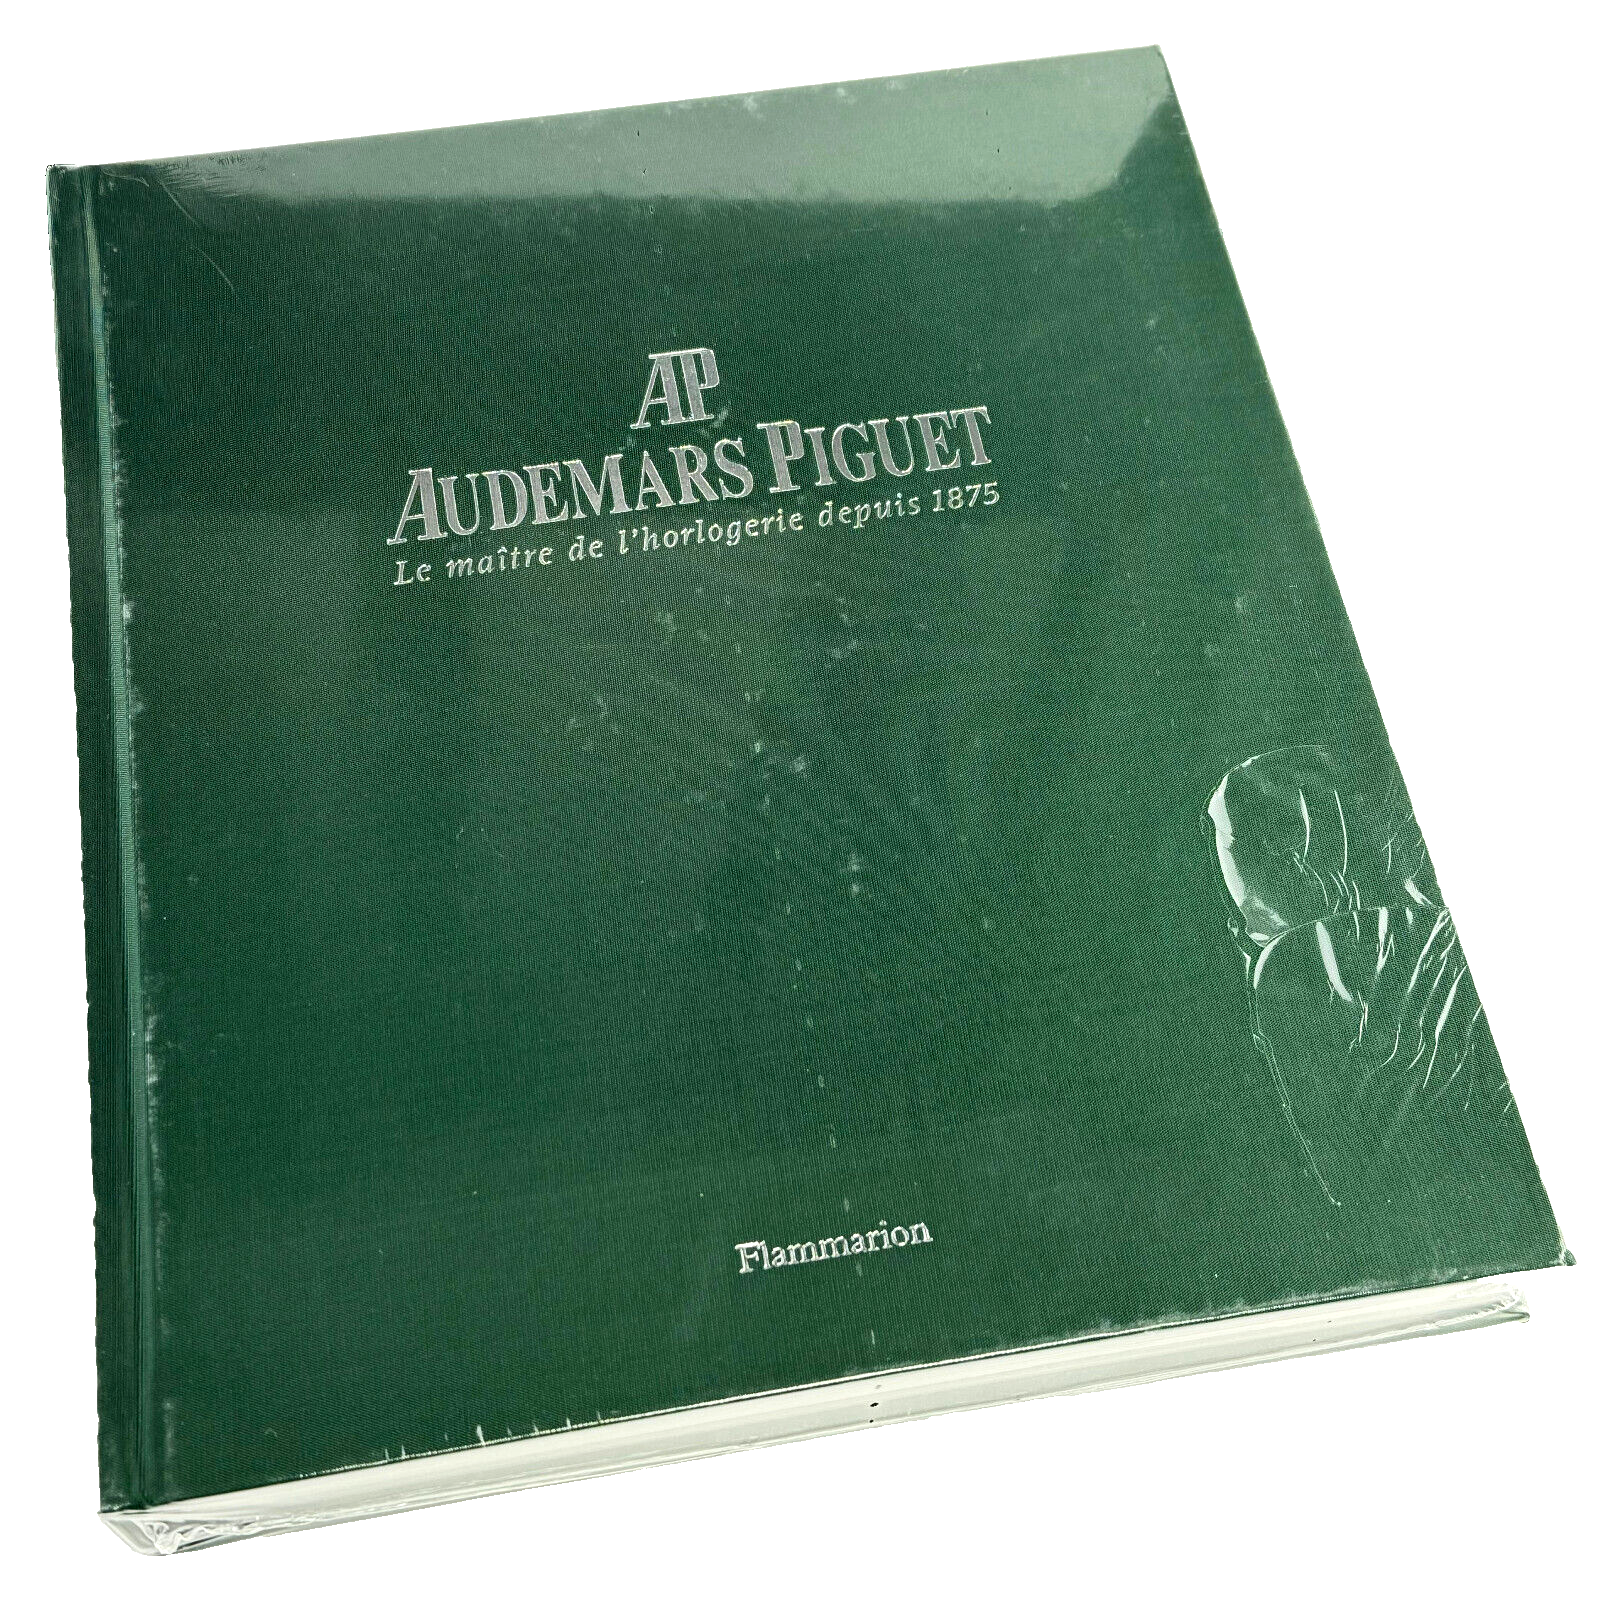 Audemars Piguet Flammarion Katalog Buch Catalog Book Hardcover Deutsch German